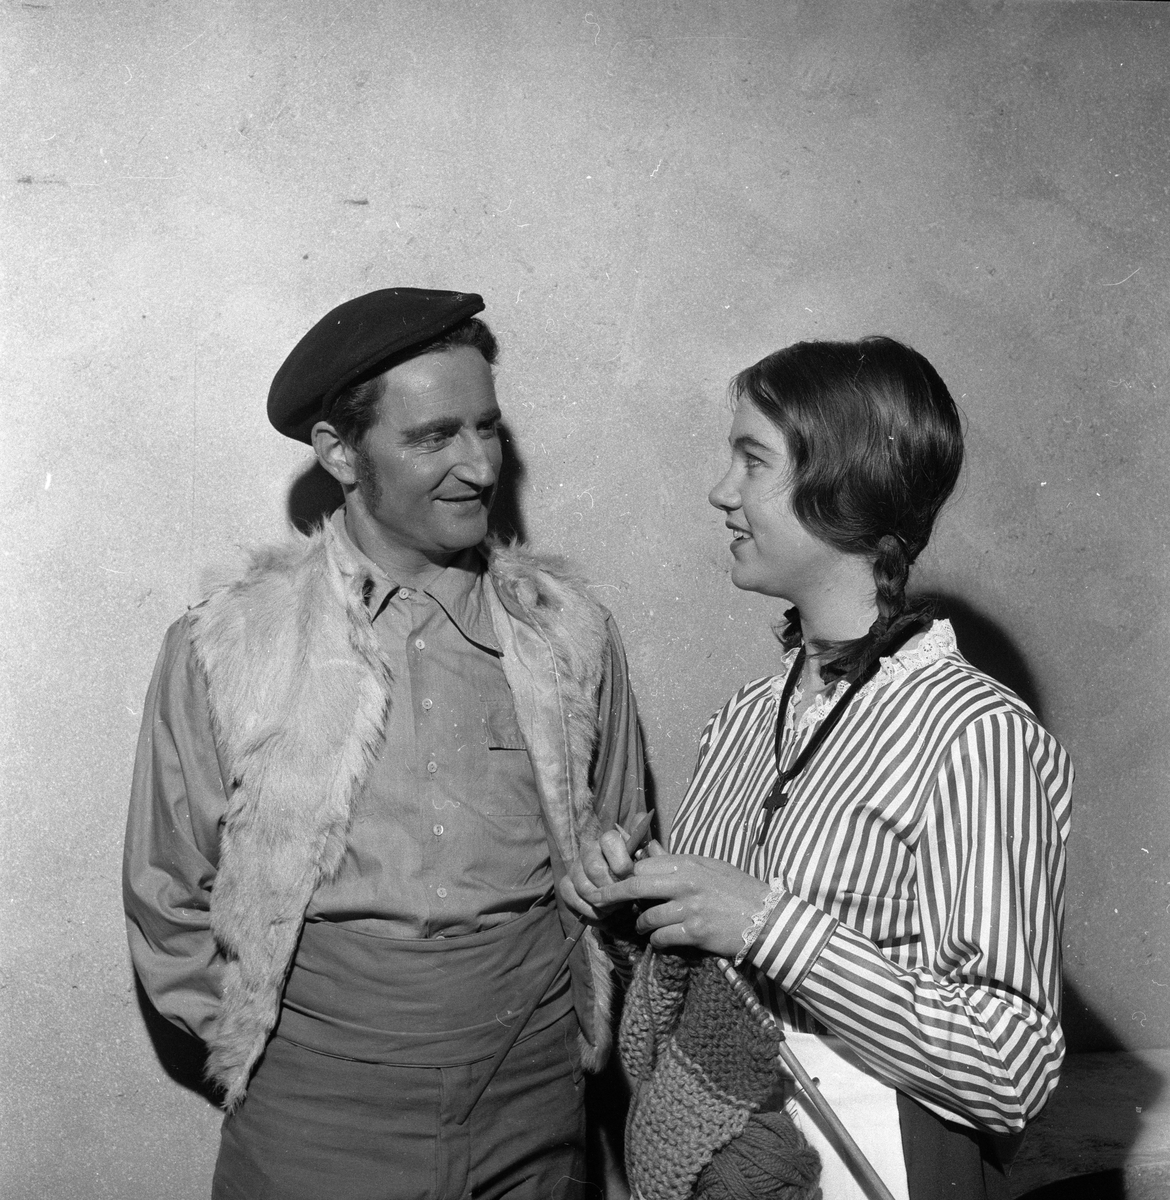 Fra operaprøve av "Lavlandet" på Folketeatret. To skuespillere. Fotografert februar 1959.